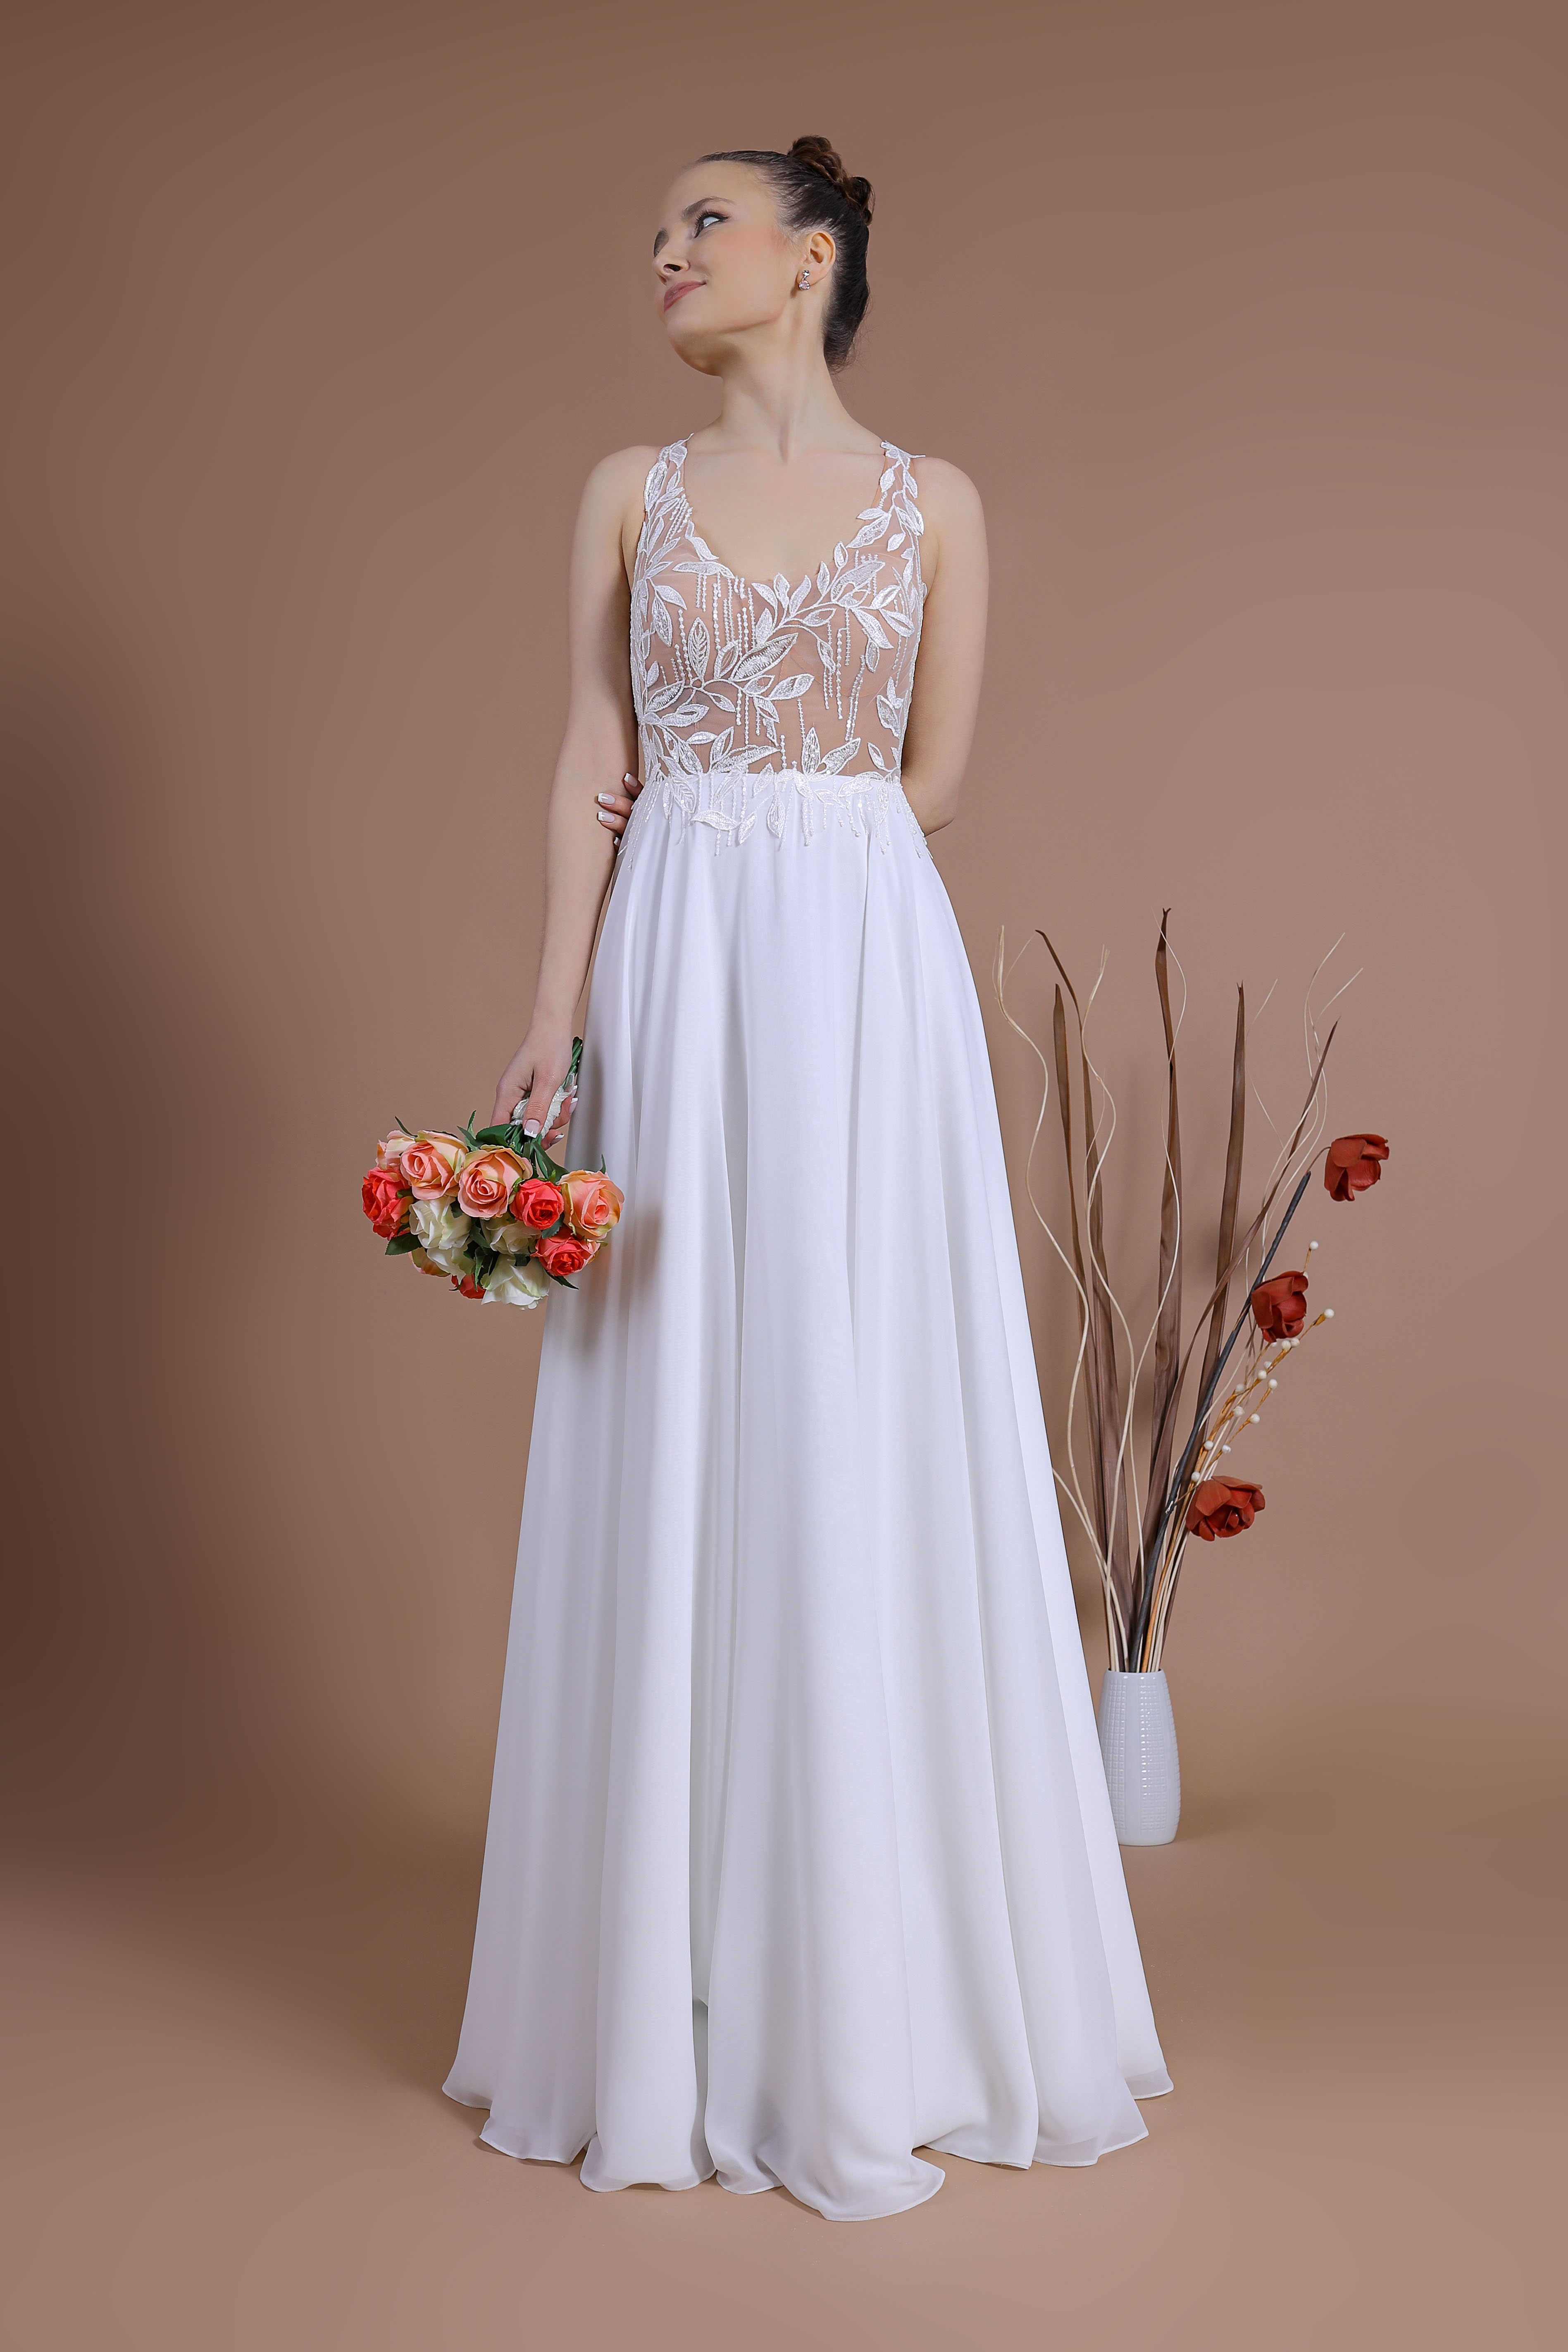 Schantal Brautkleid aus der Kollektion „Traum“, Modell 14075.